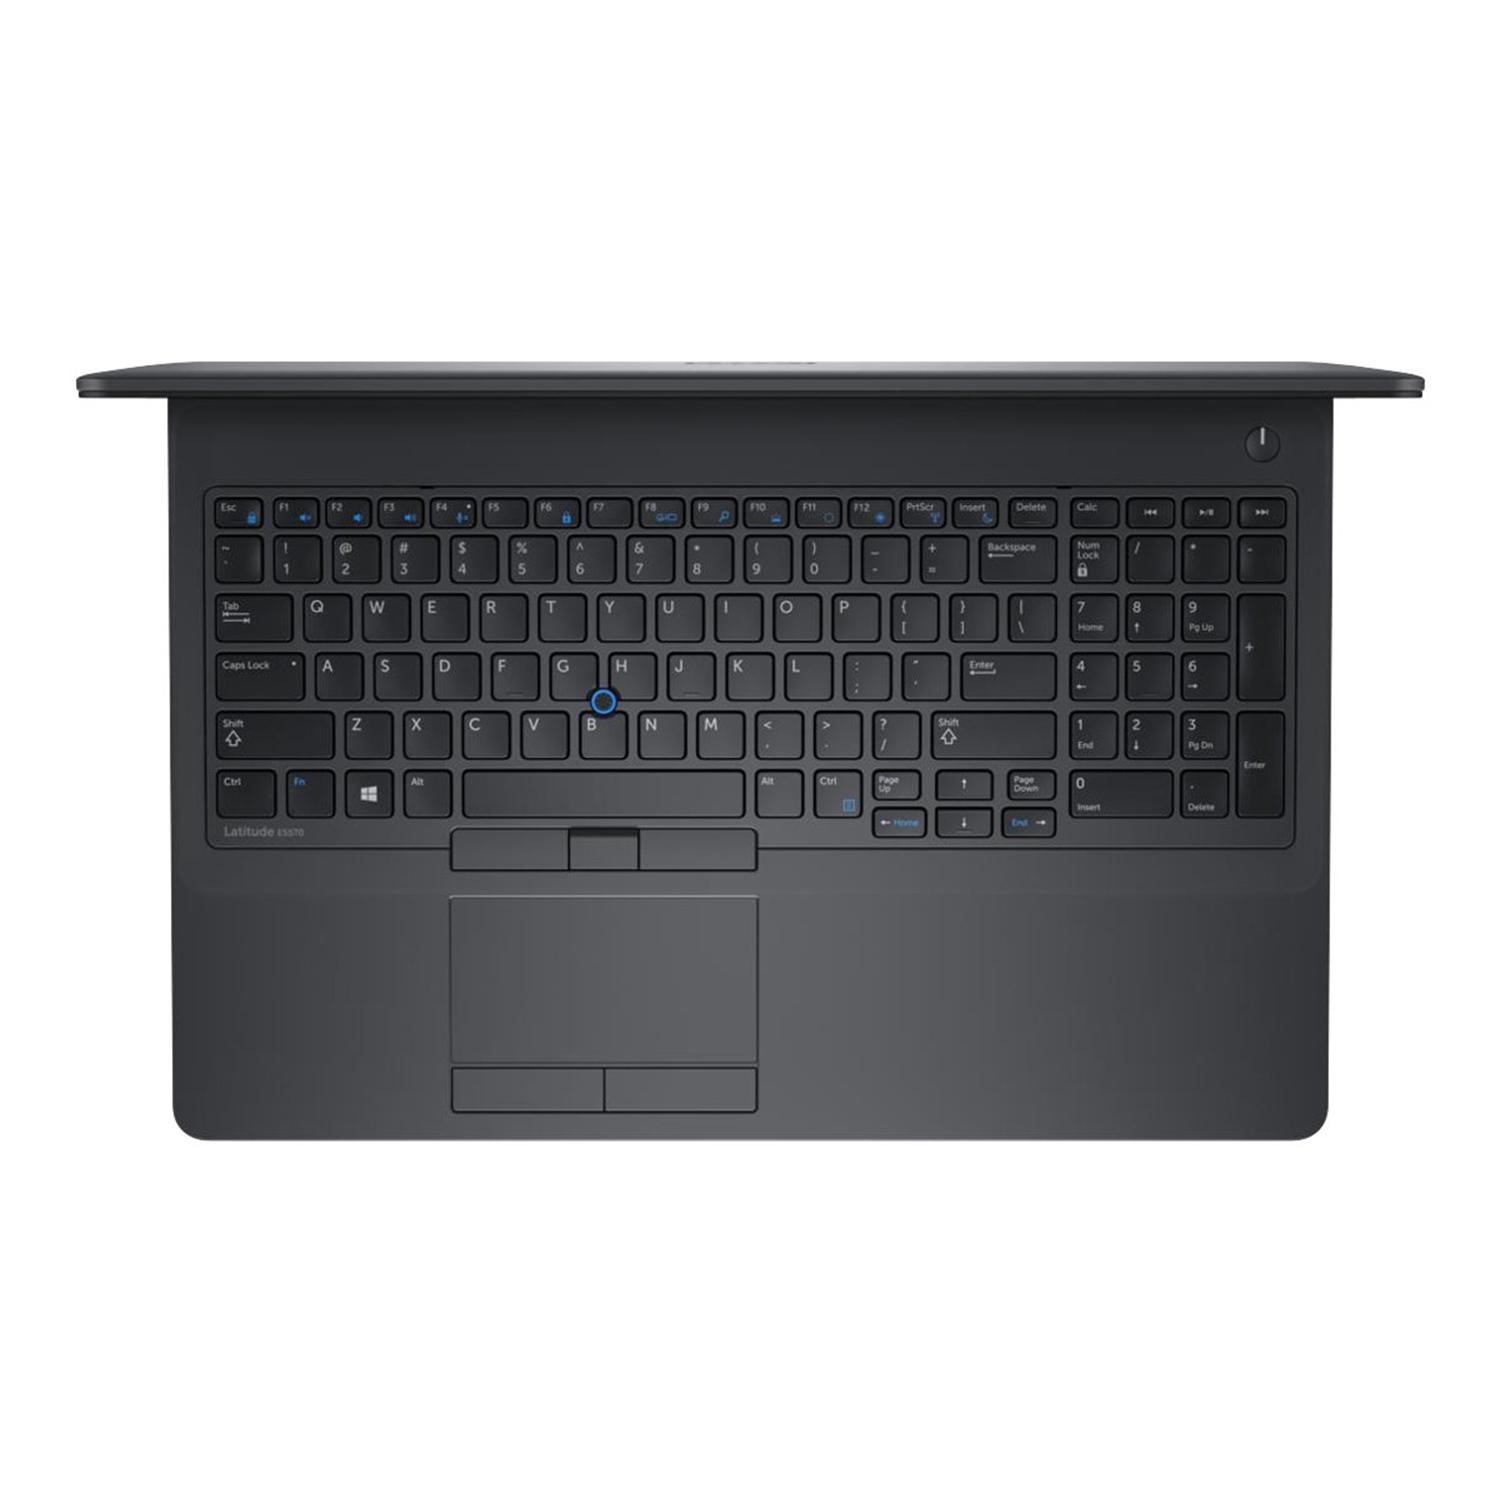 GRADE A1 - Dell Latitude E5570 Core i5-6200U  4GB 500GB  Inch  Windows 10 Professional Laptop - Laptops Direct